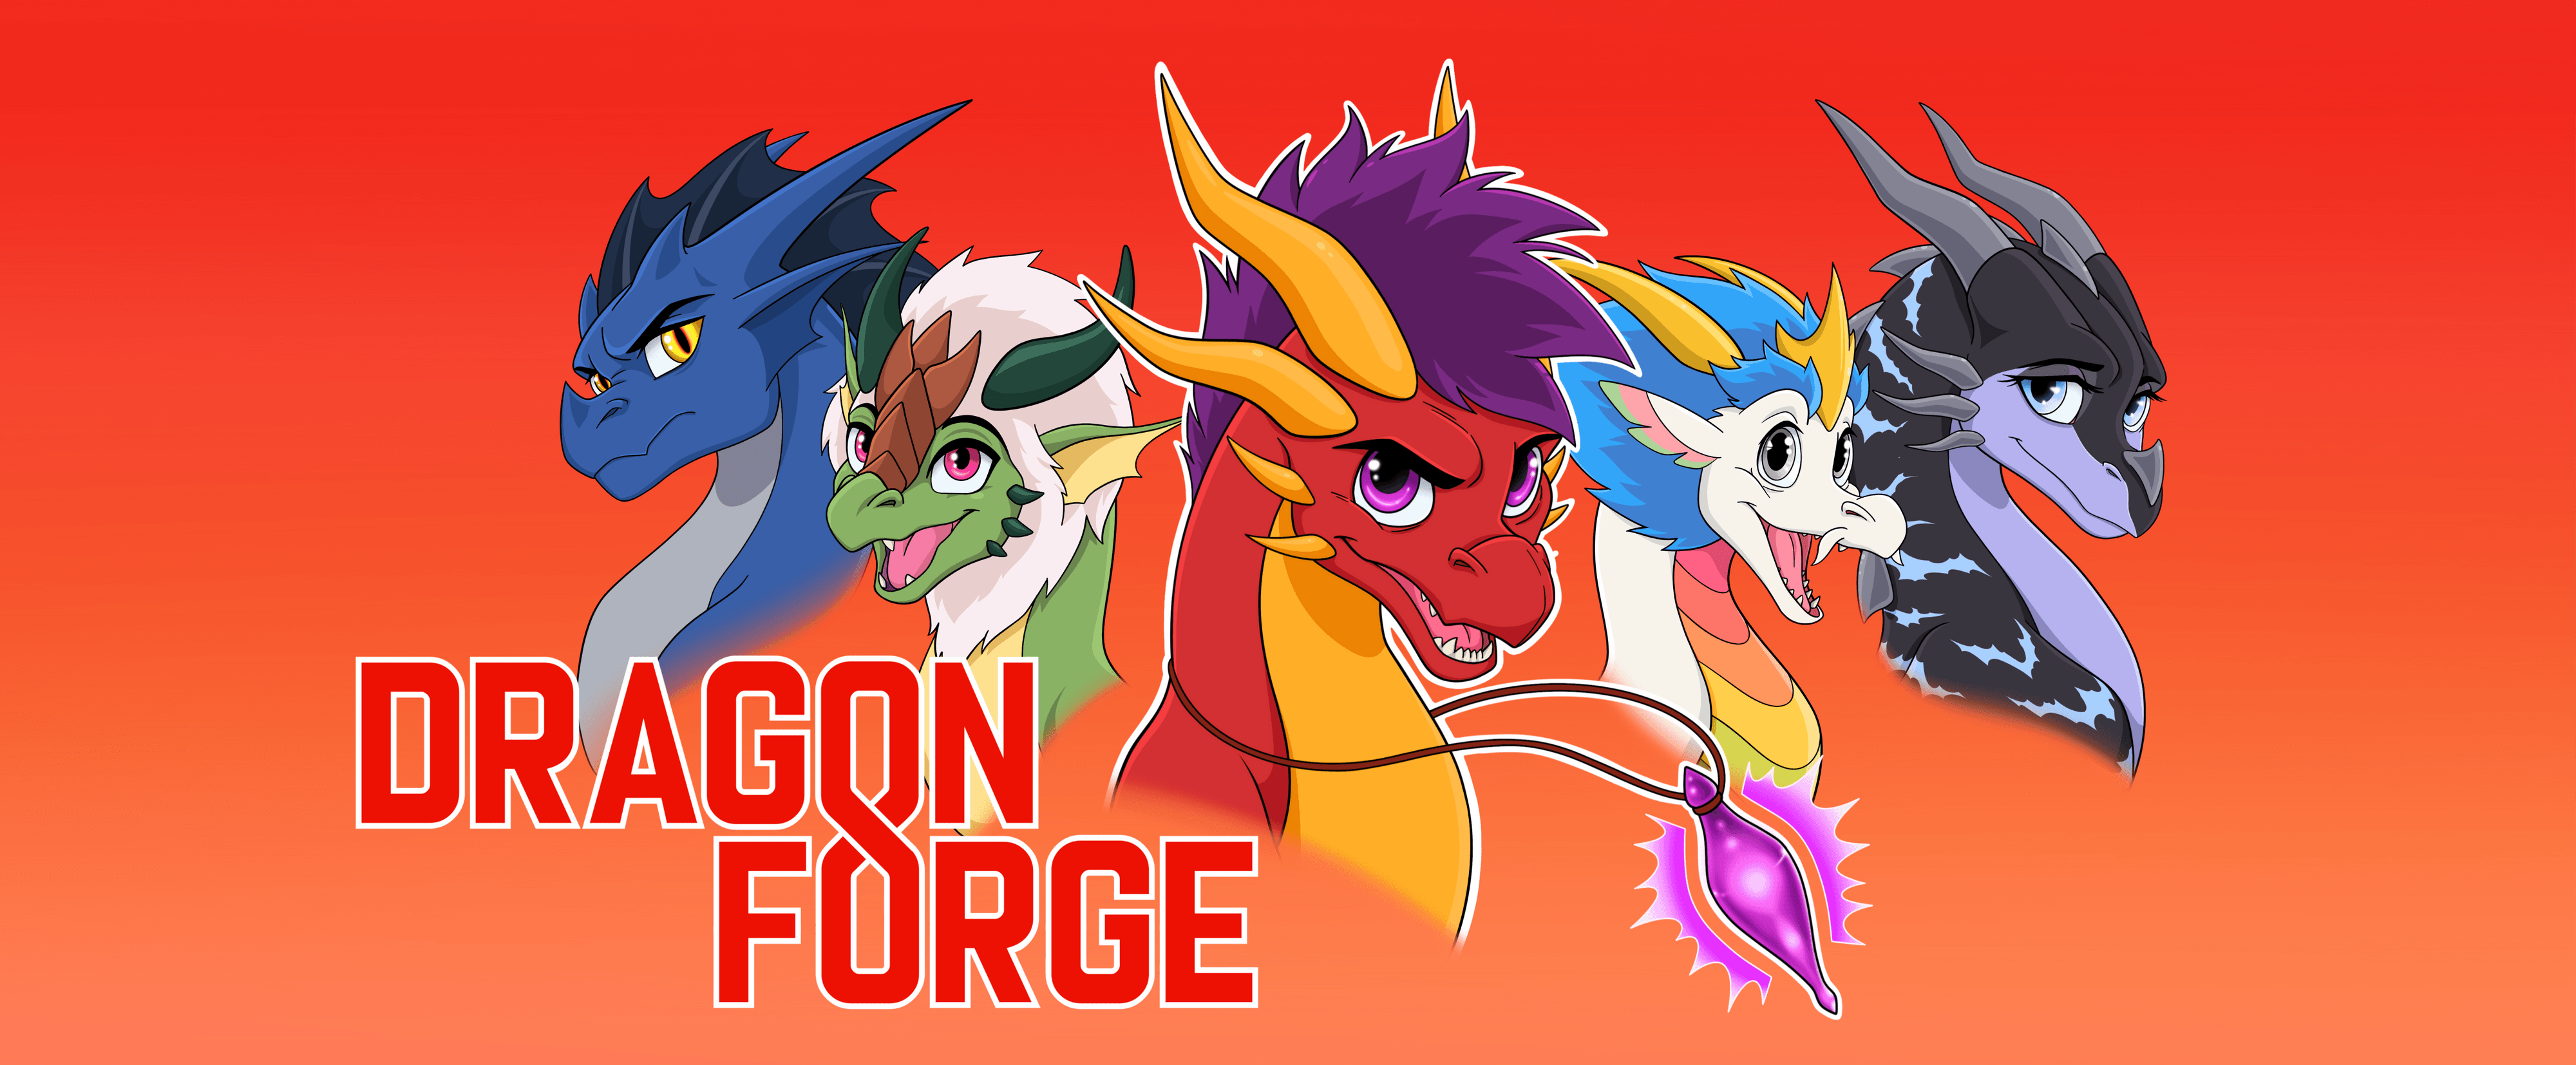 DragonForge banner